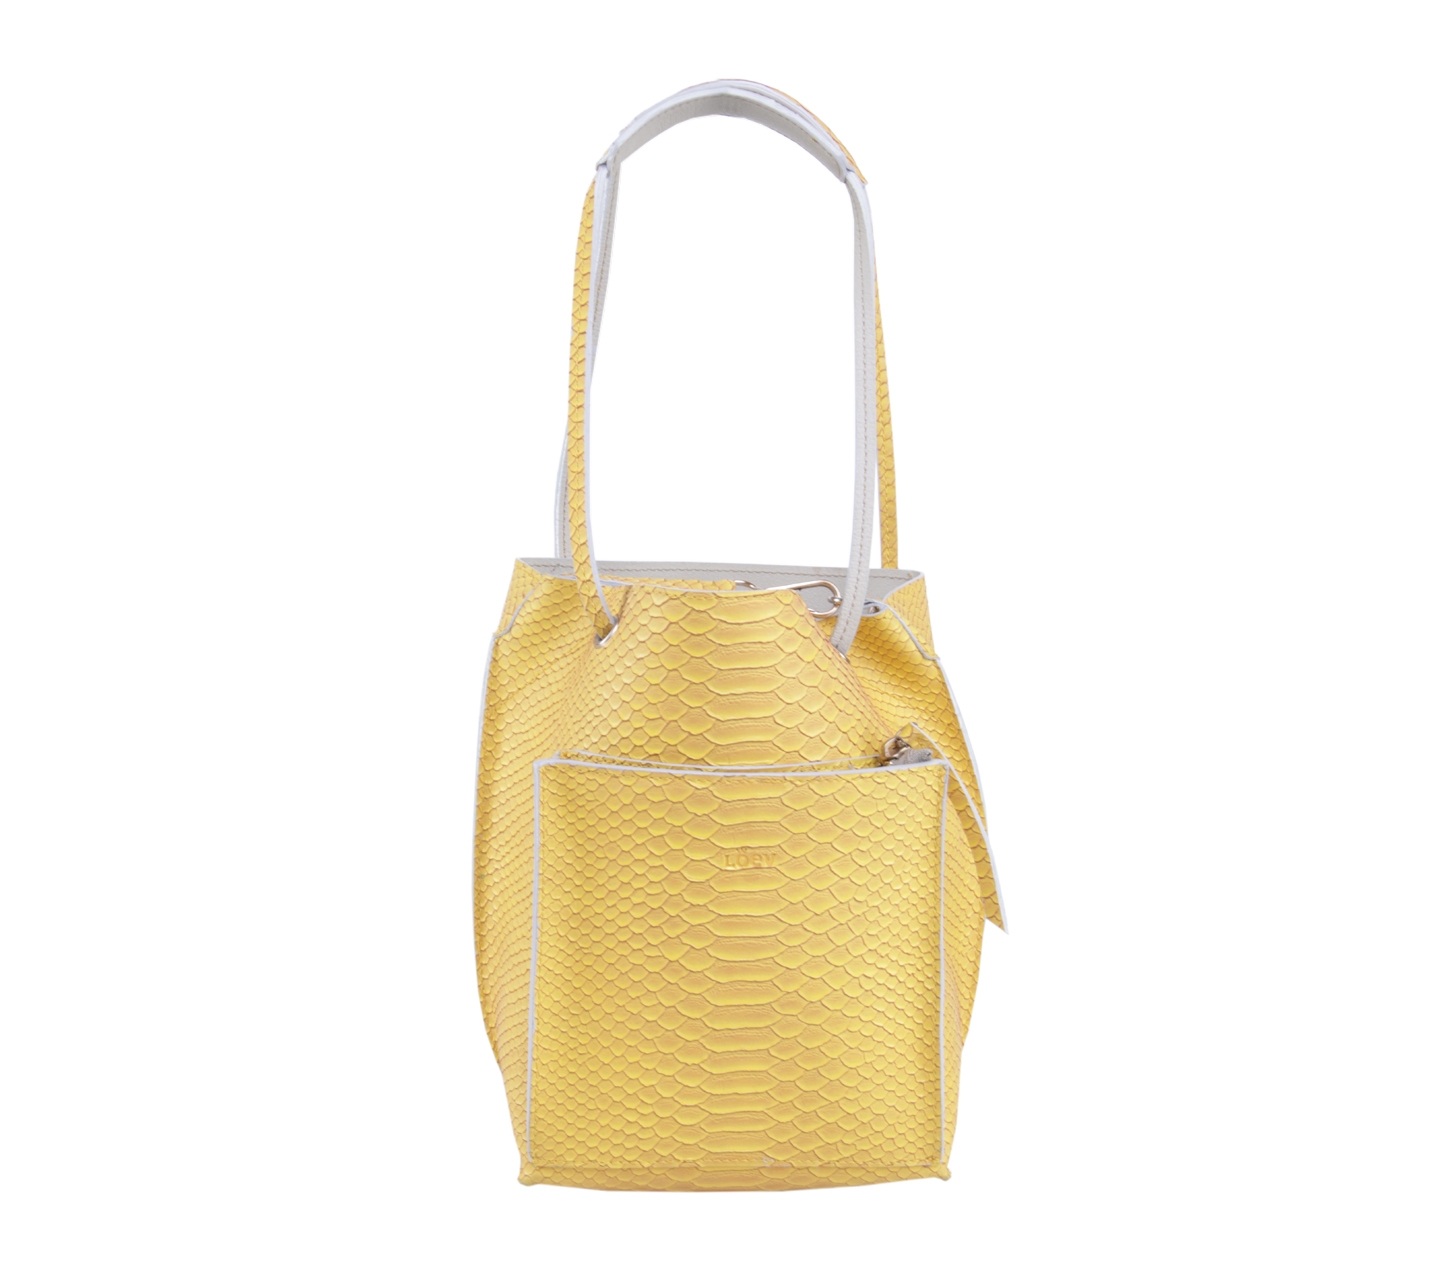 Loev Dapoza Yellow Handbag